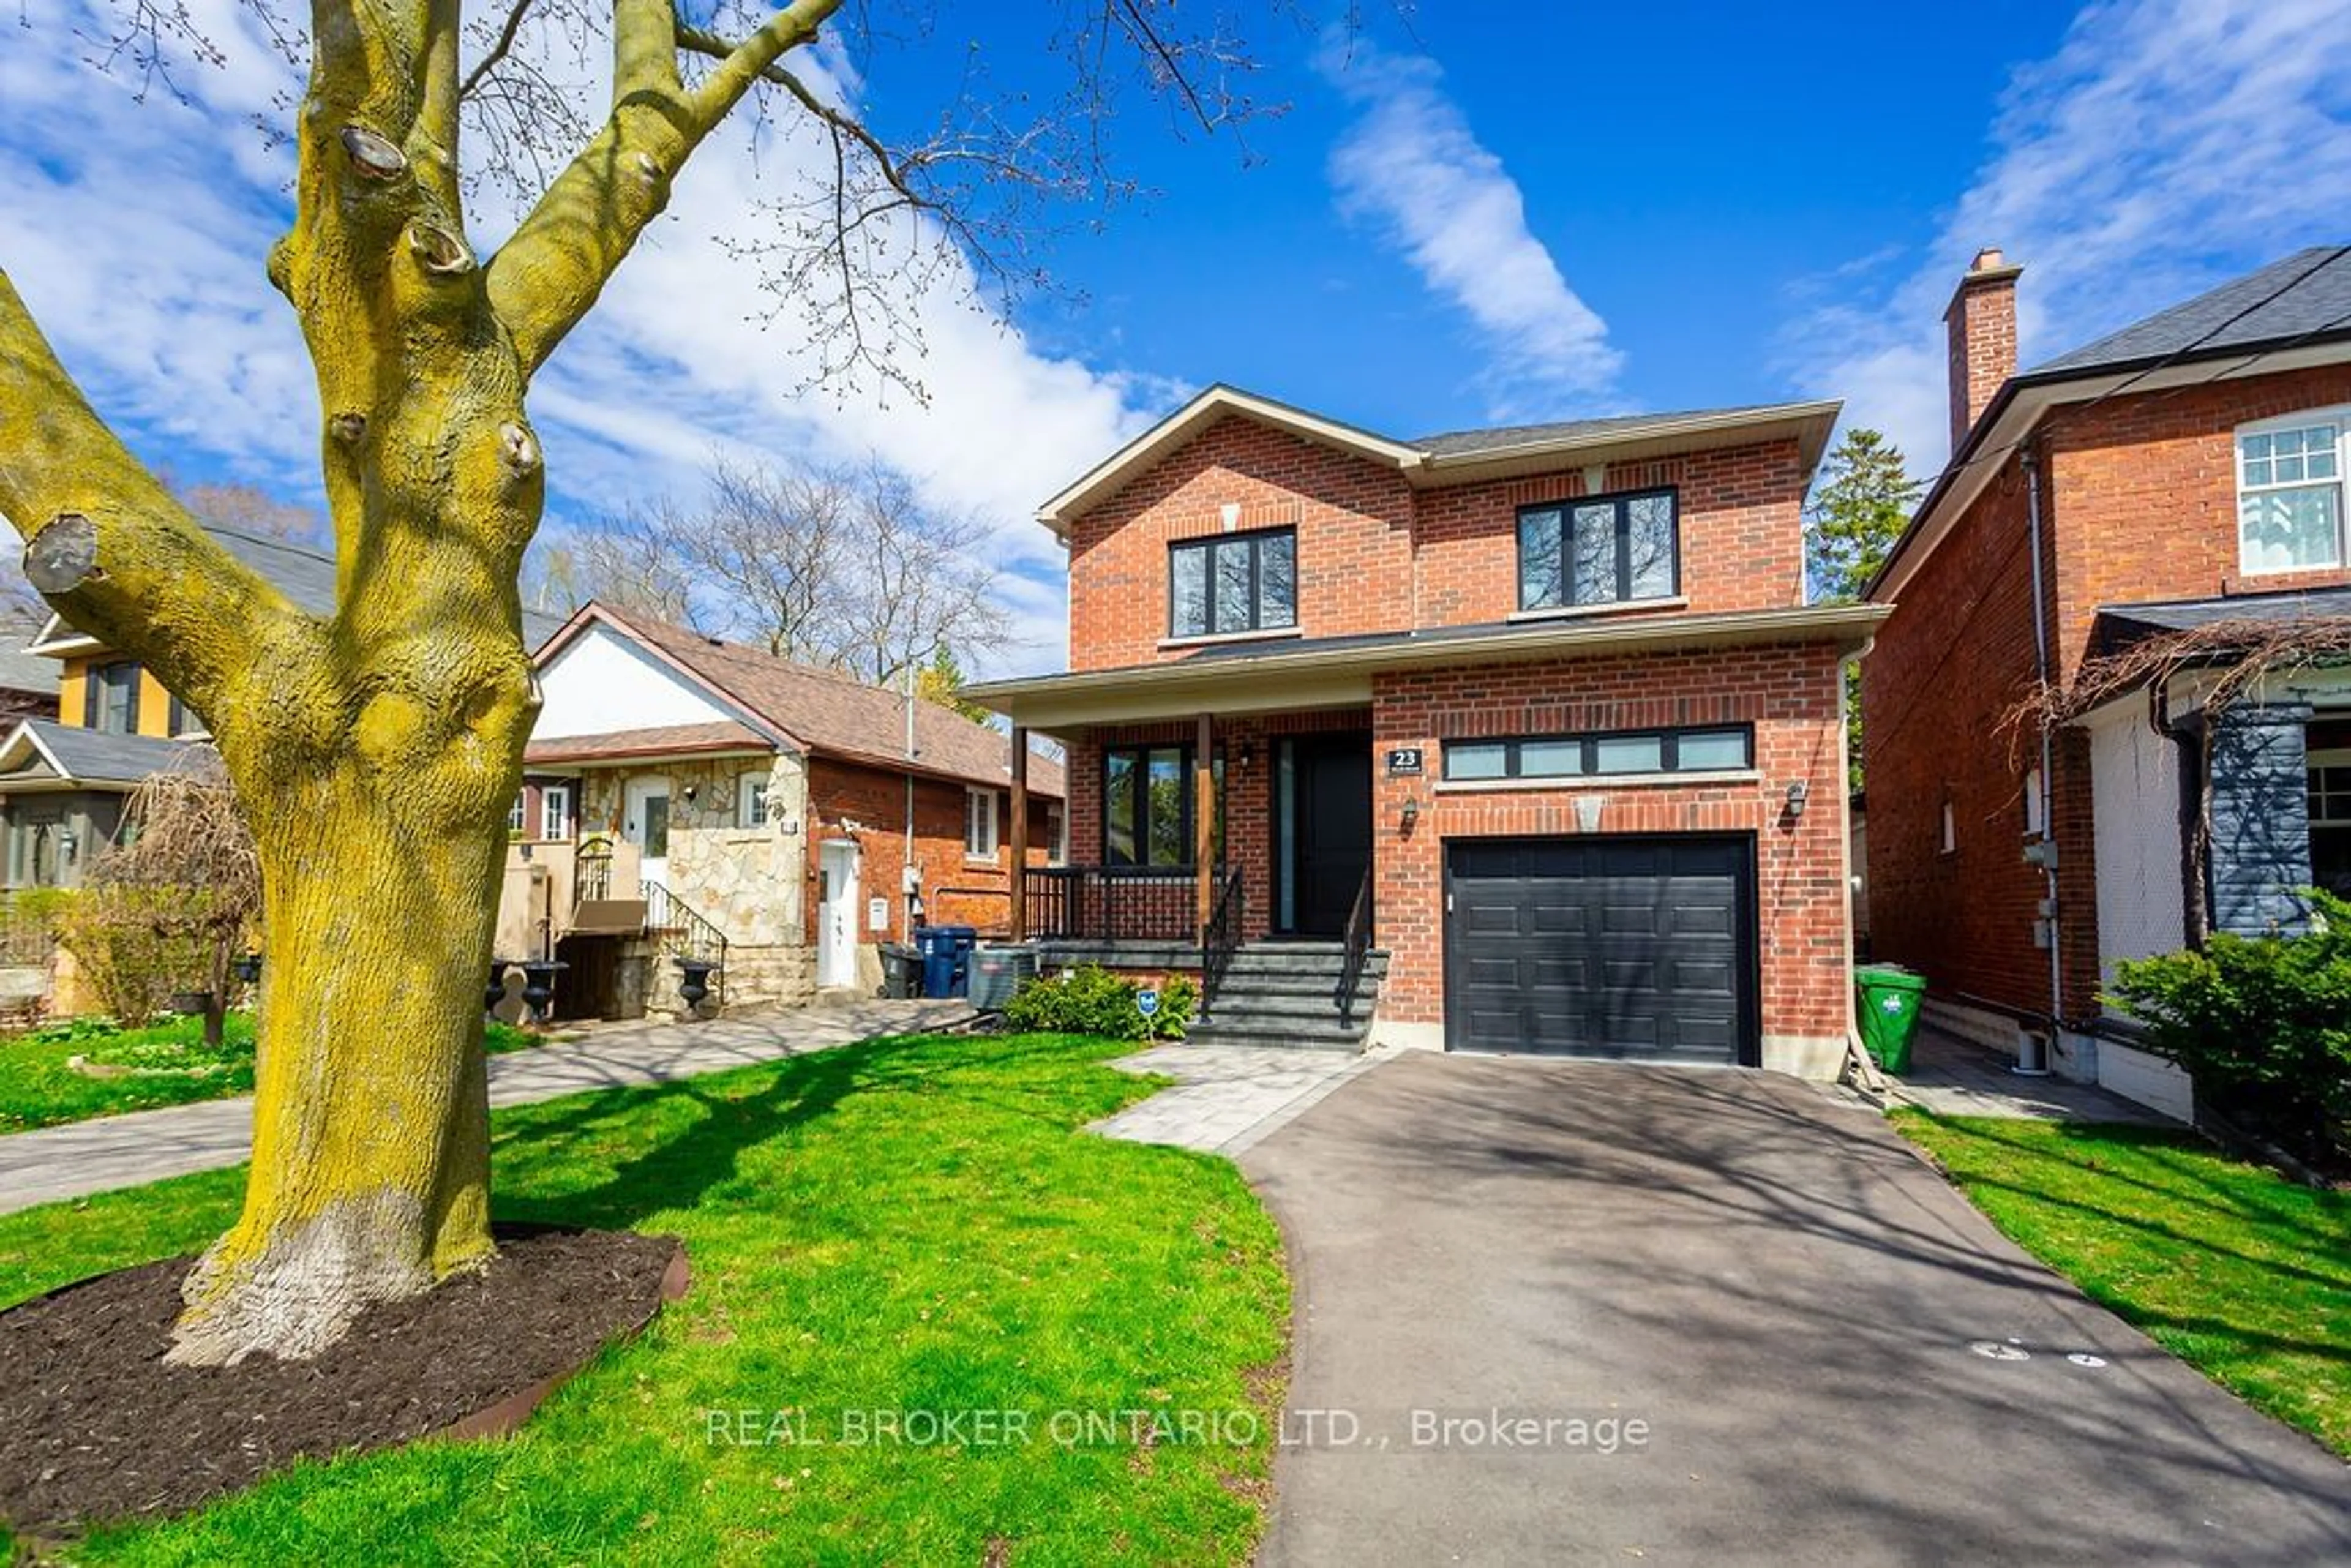 Home with brick exterior material for 23 Ninth St, Toronto Ontario M8V 3E2